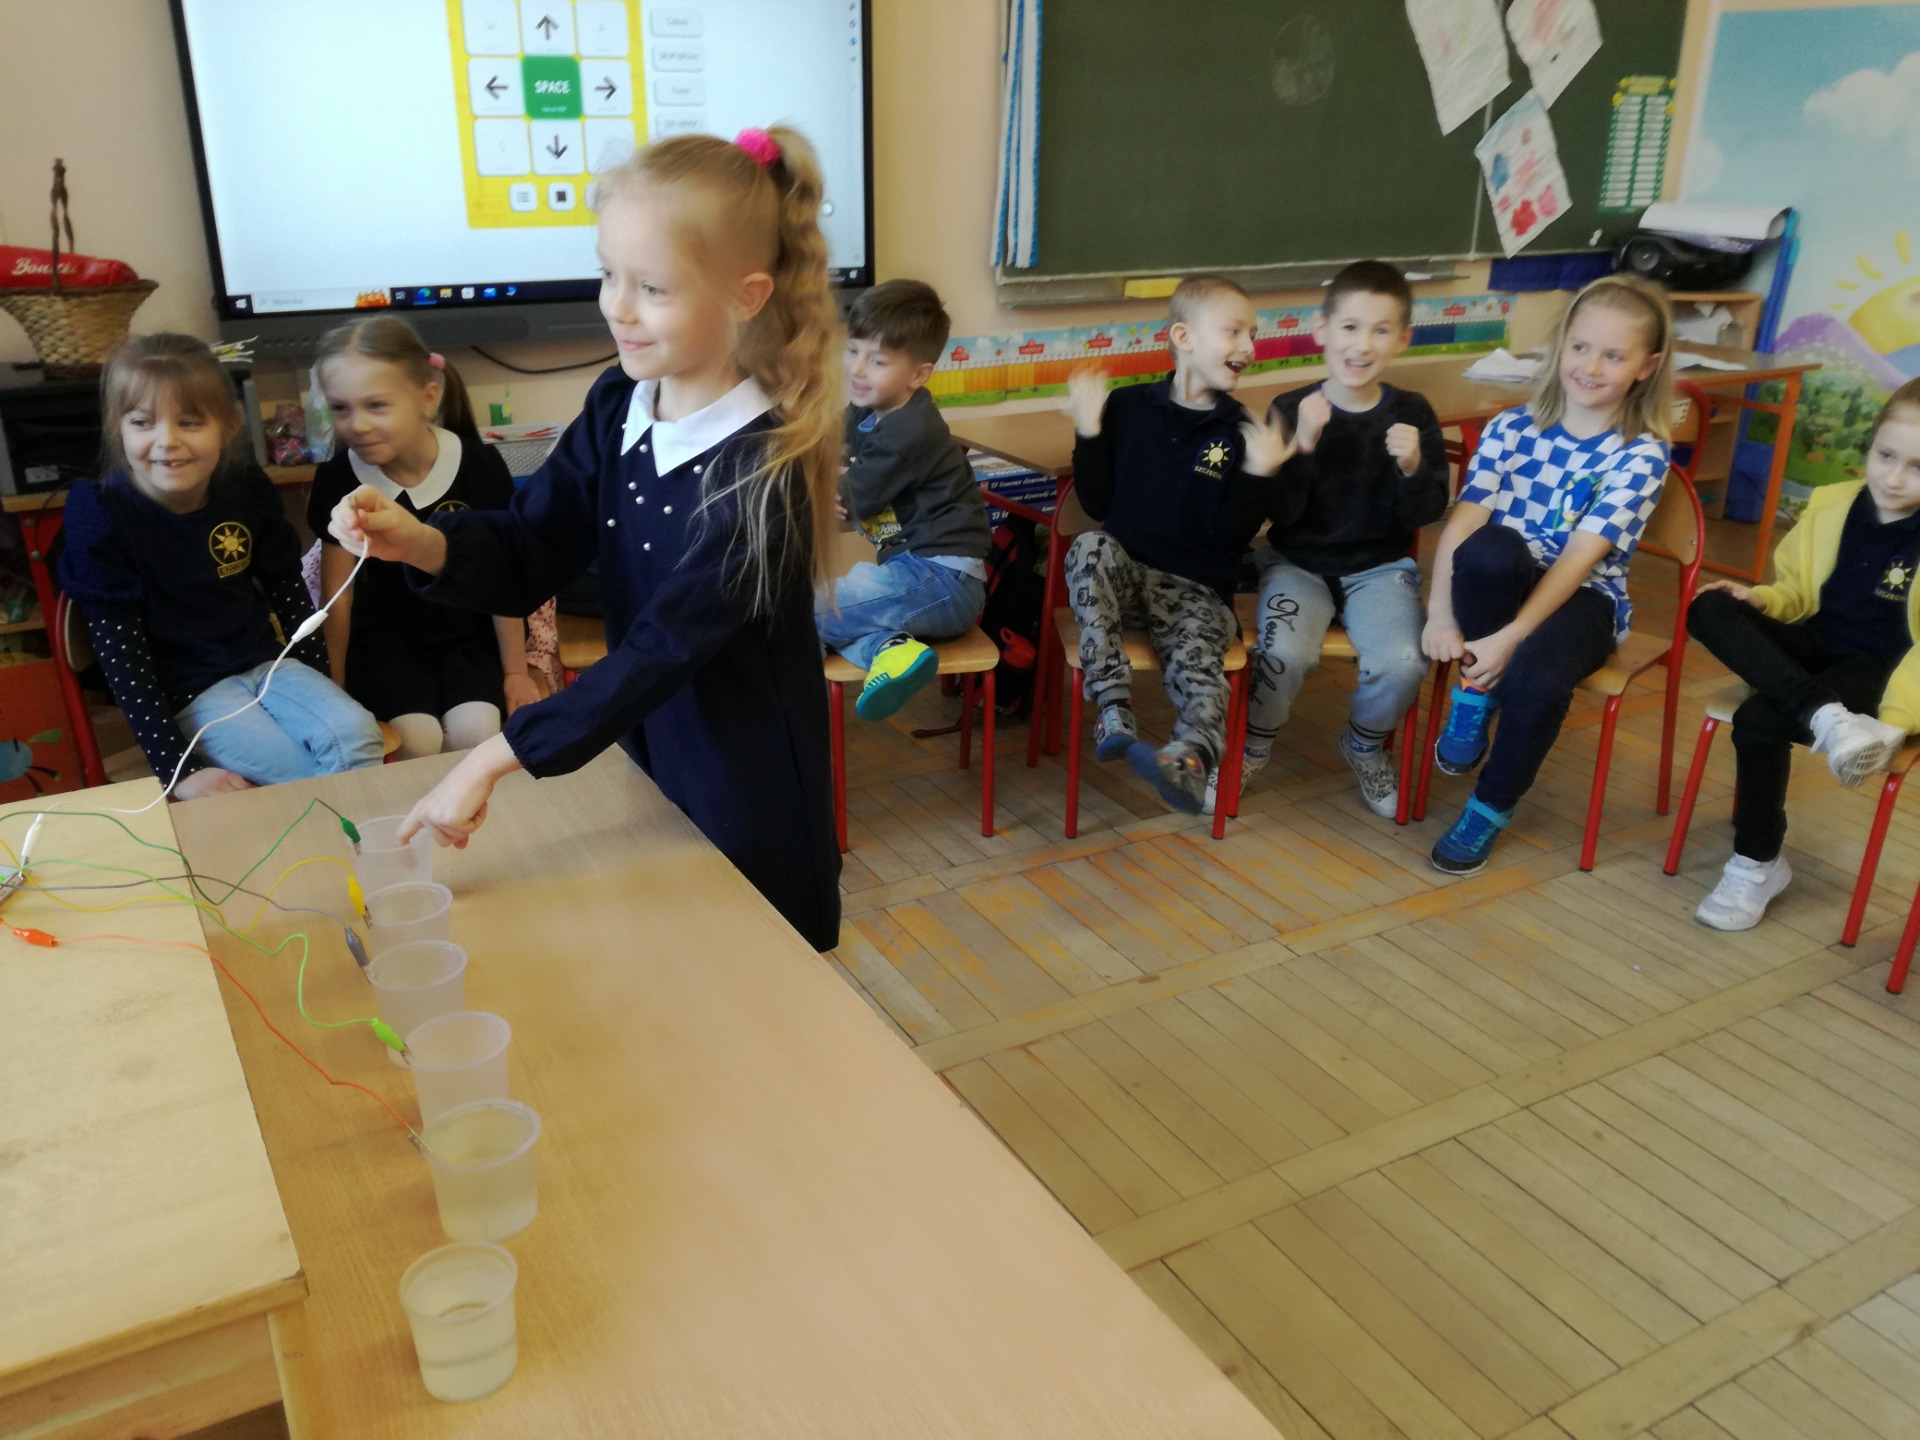 Uczniowie grają na kubkach z wodą tworząc muzykę przy użyciu aplikacji Makey Makey Sampler: